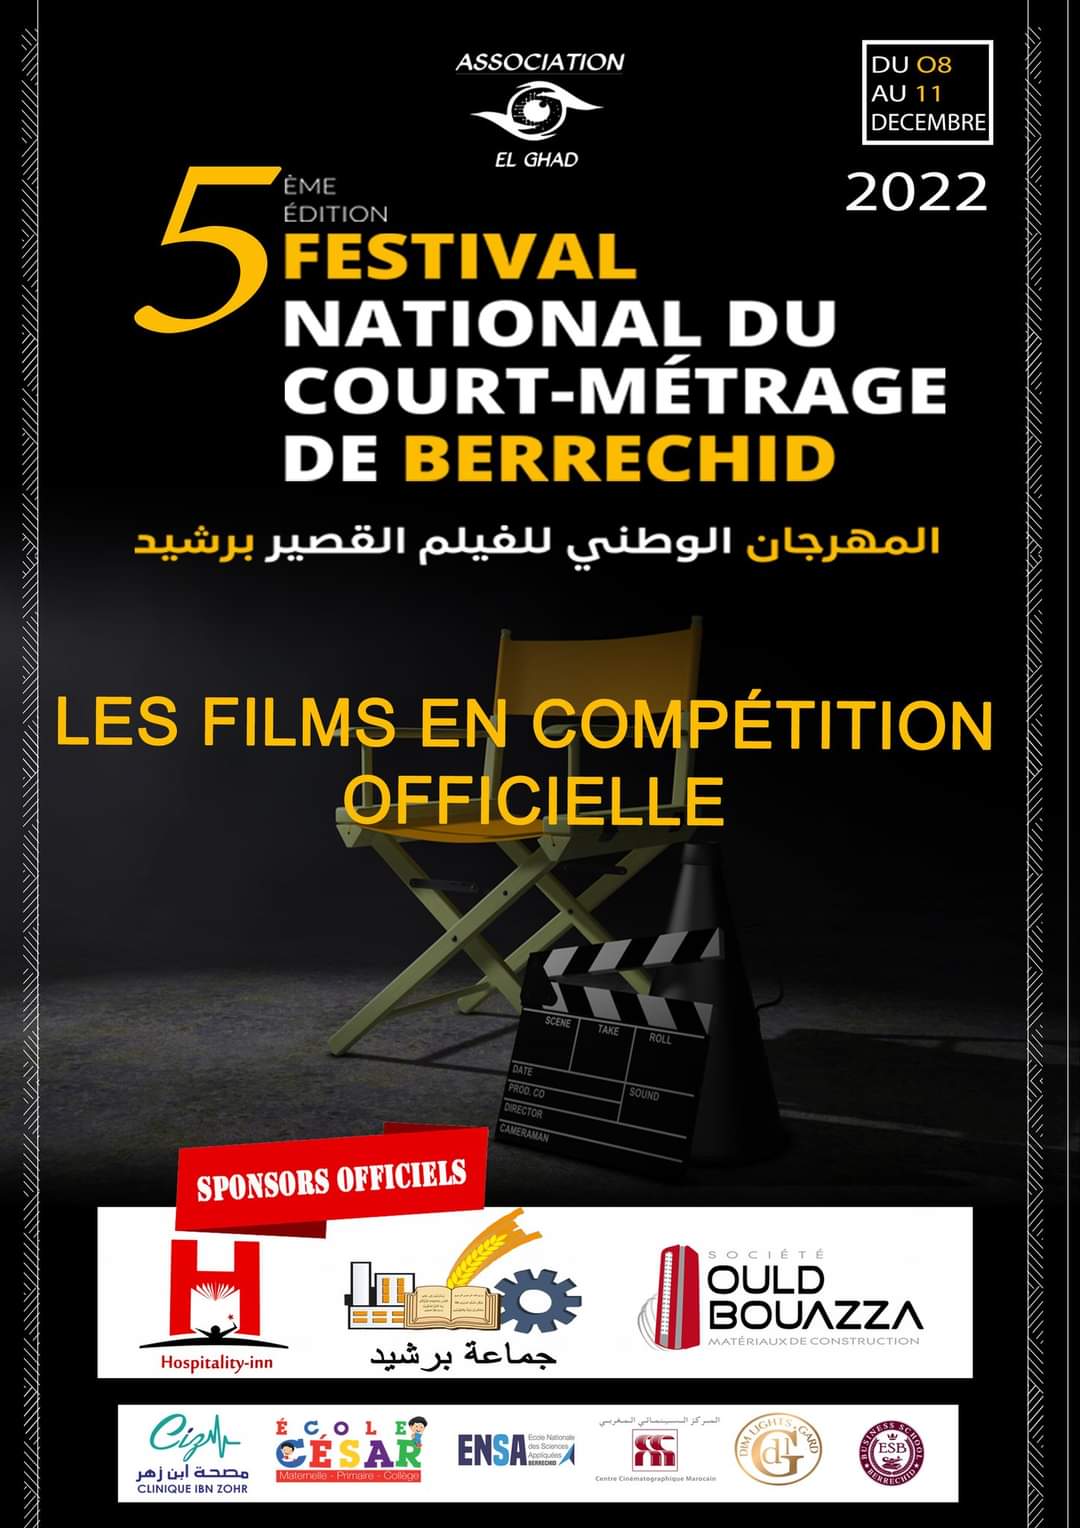 مدينة برشيد تحتضن النسخة الخامسة للمهرجان الوطني للفيلم القصير